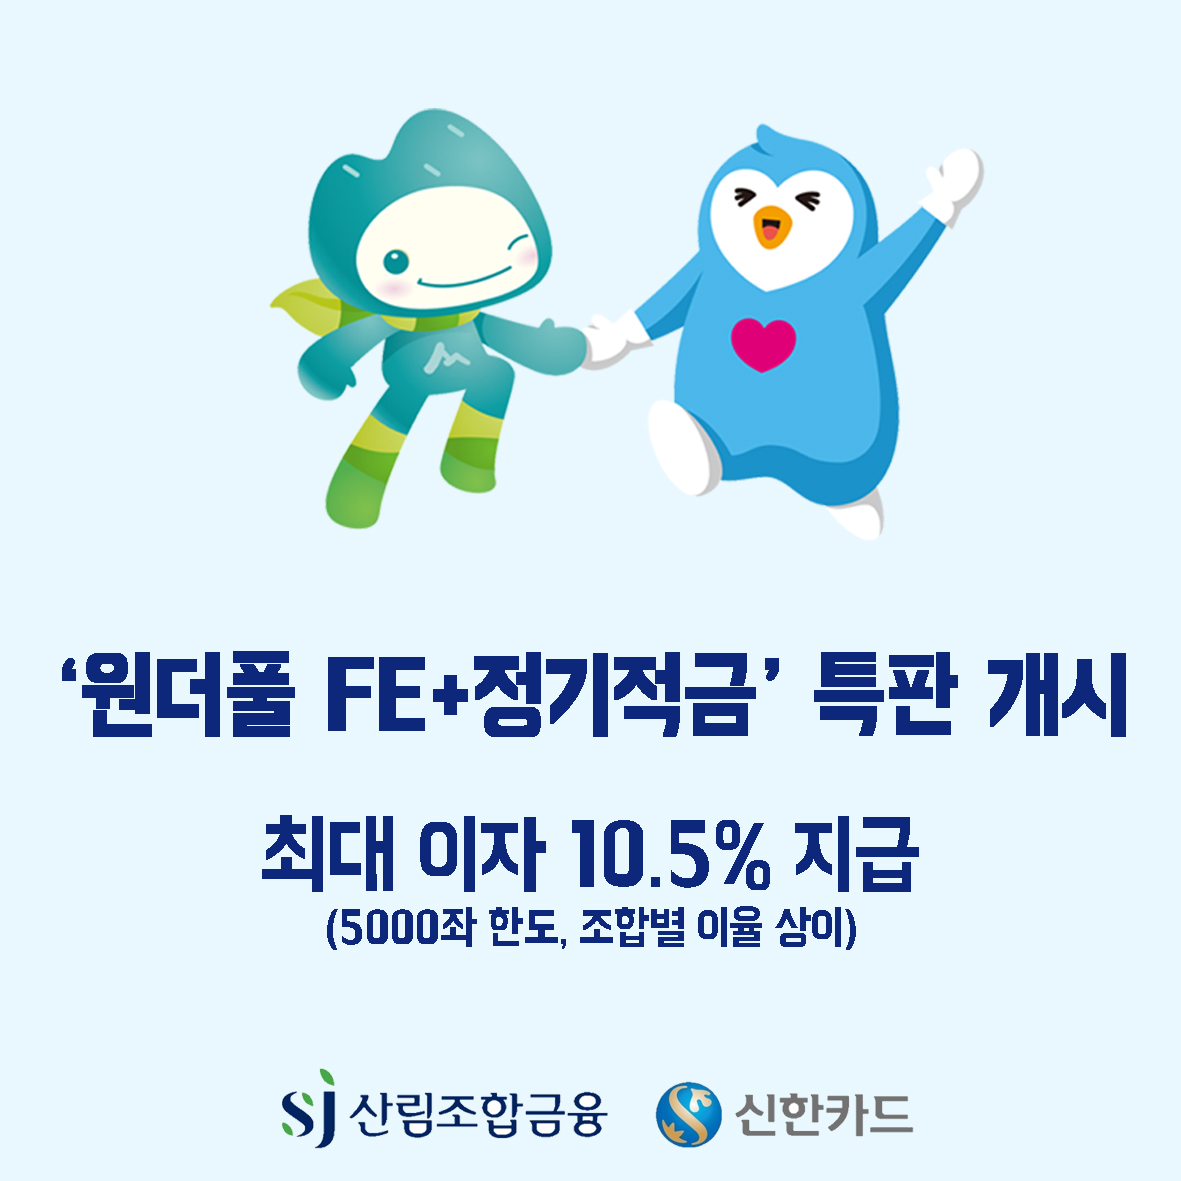 SJ산림조합-신한카드, ‘원더풀 FE+ 정기적금’ 특판 개시